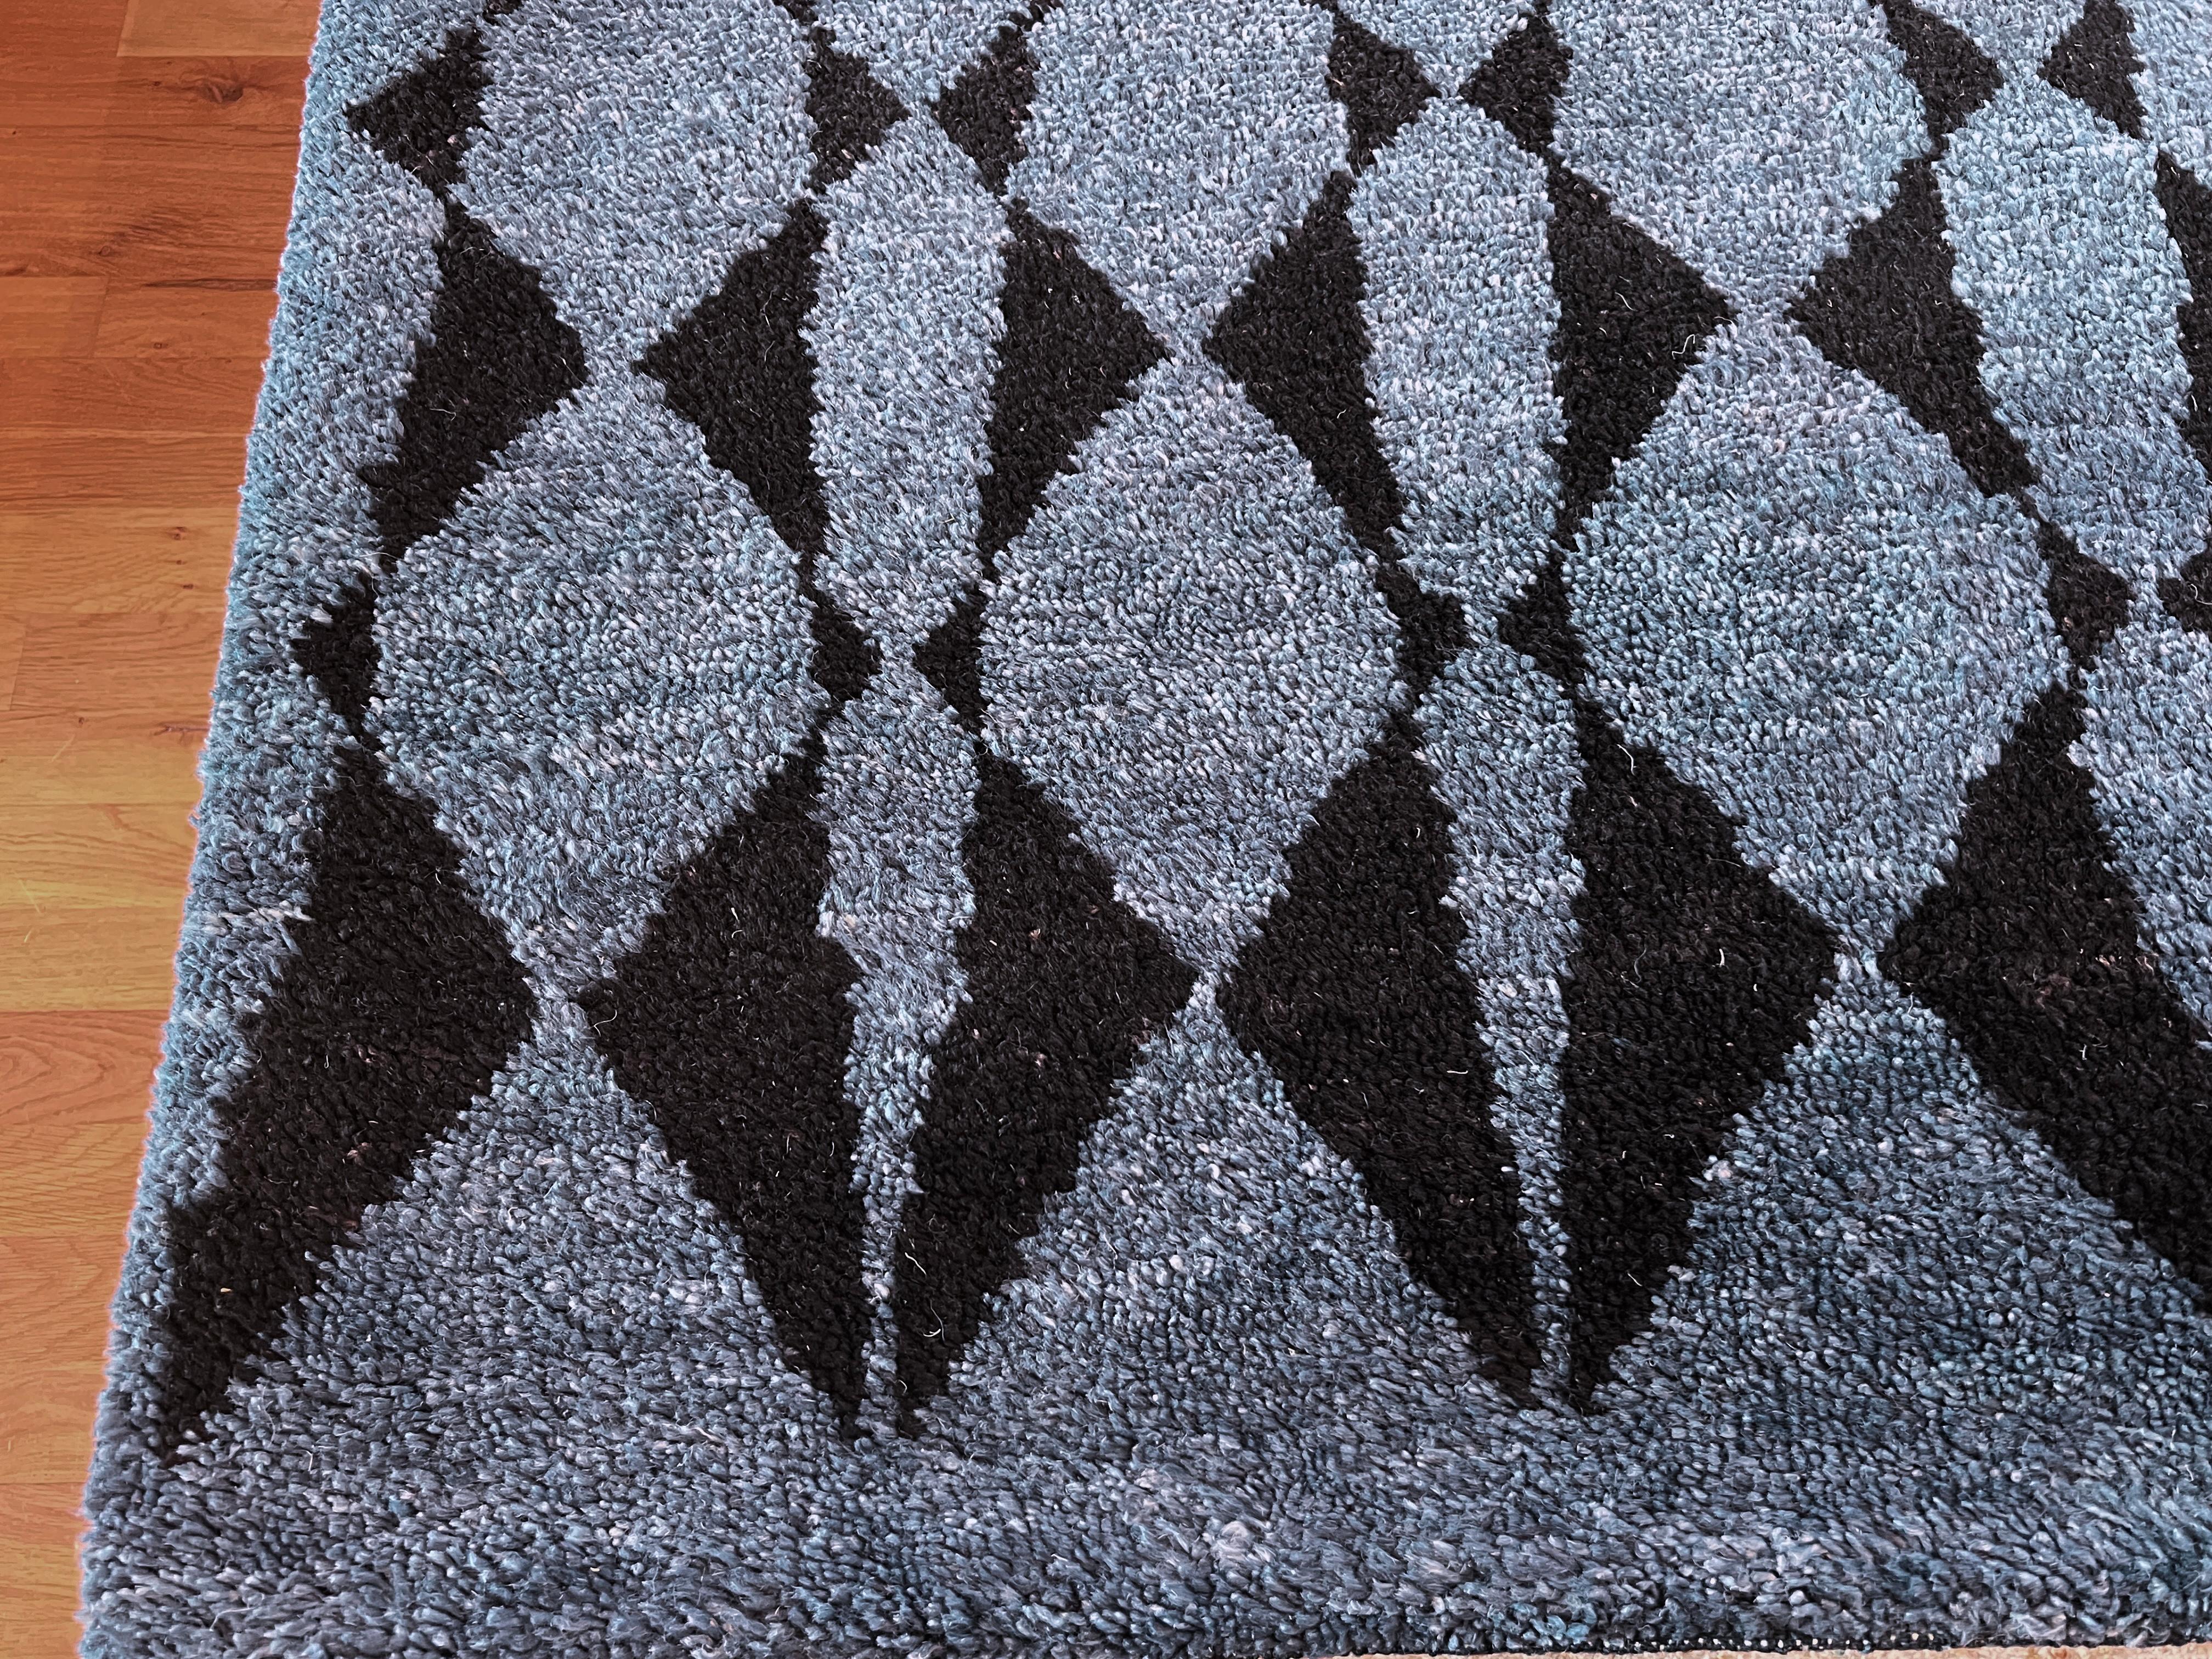 Ajoutez une touche de style moderne et tribal à votre intérieur avec notre tapis marocain 9'x12'. Le fond bleu marine vibrant et l'accent noir en forme de diamant feront sensation dans n'importe quelle pièce. Doux et durable, ce tapis ne manquera